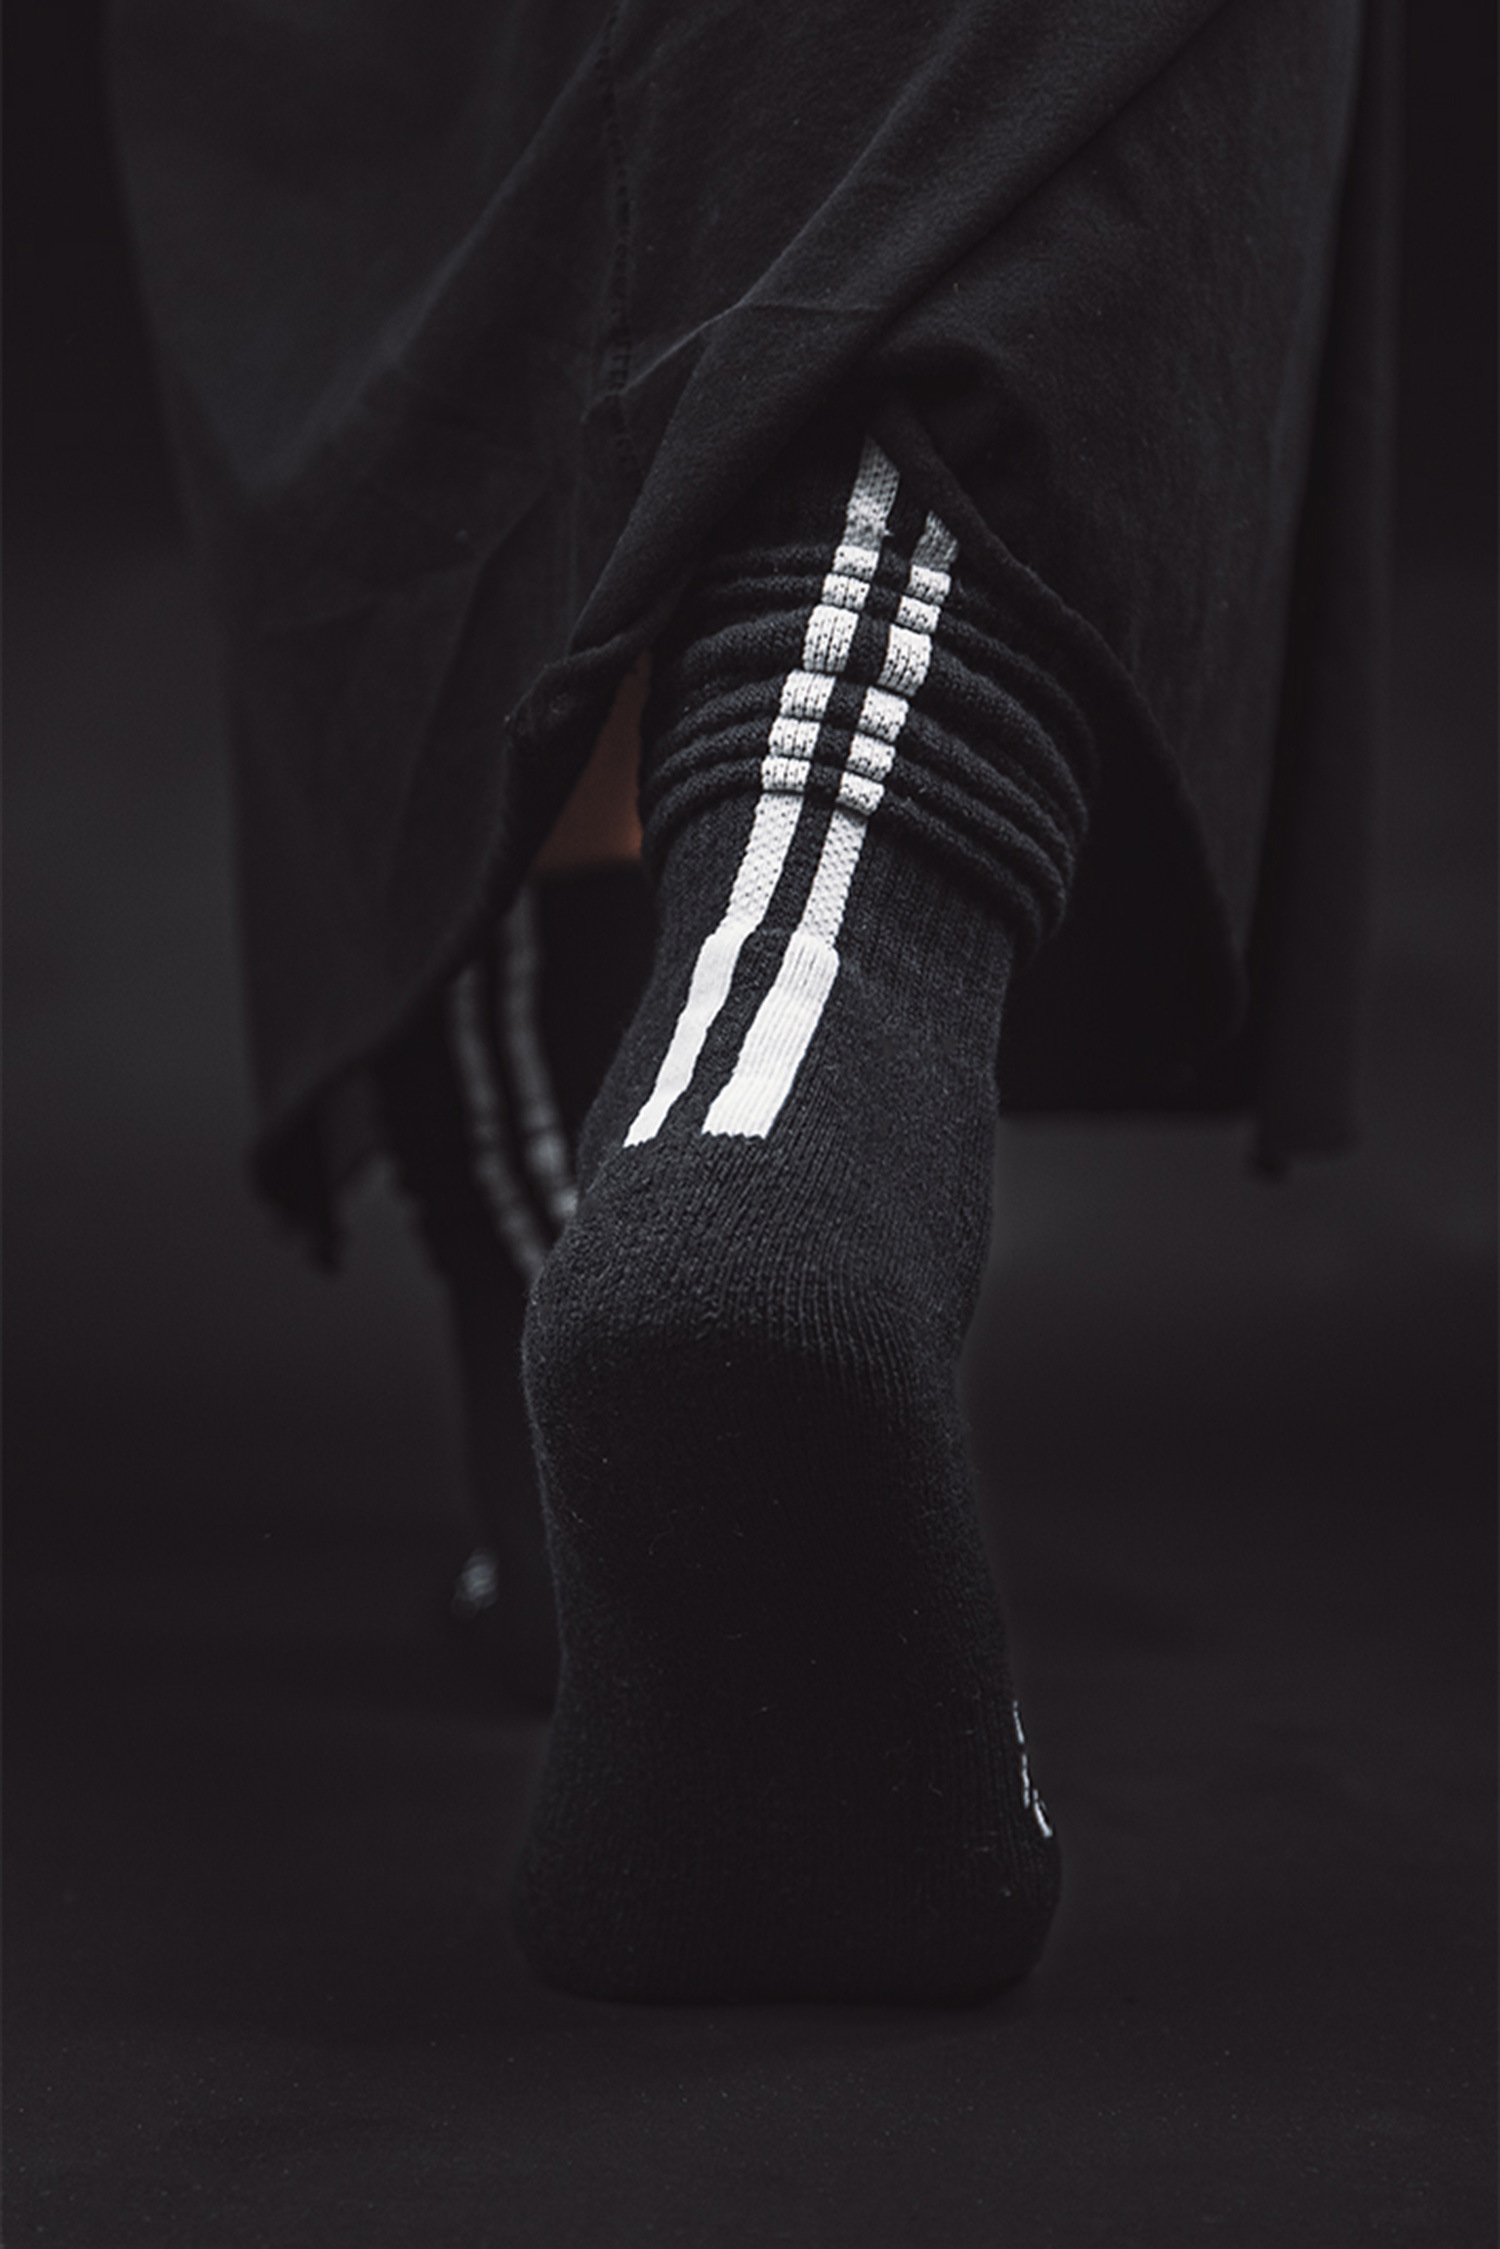 Socken mit Streifen - schwarz